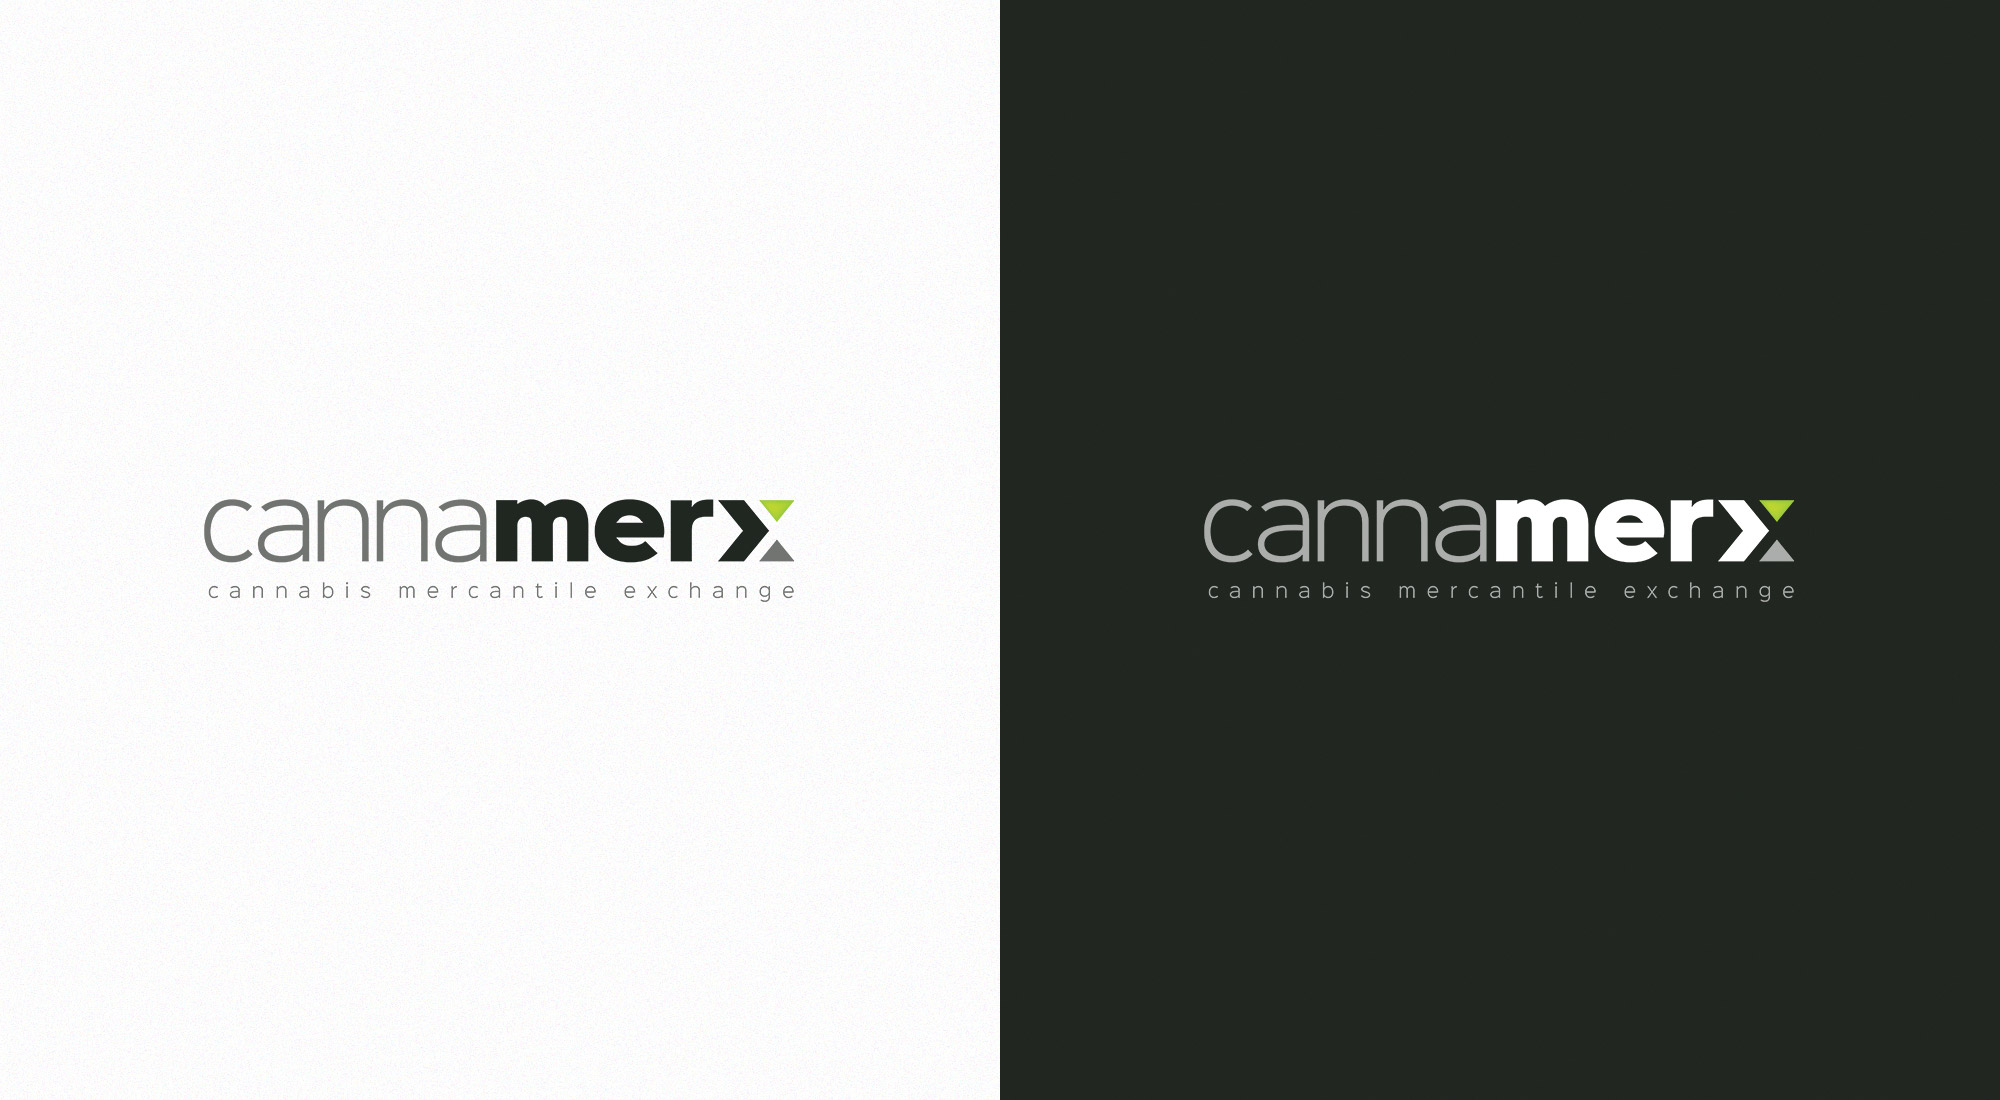 Cannamerx Logo Colour Variants